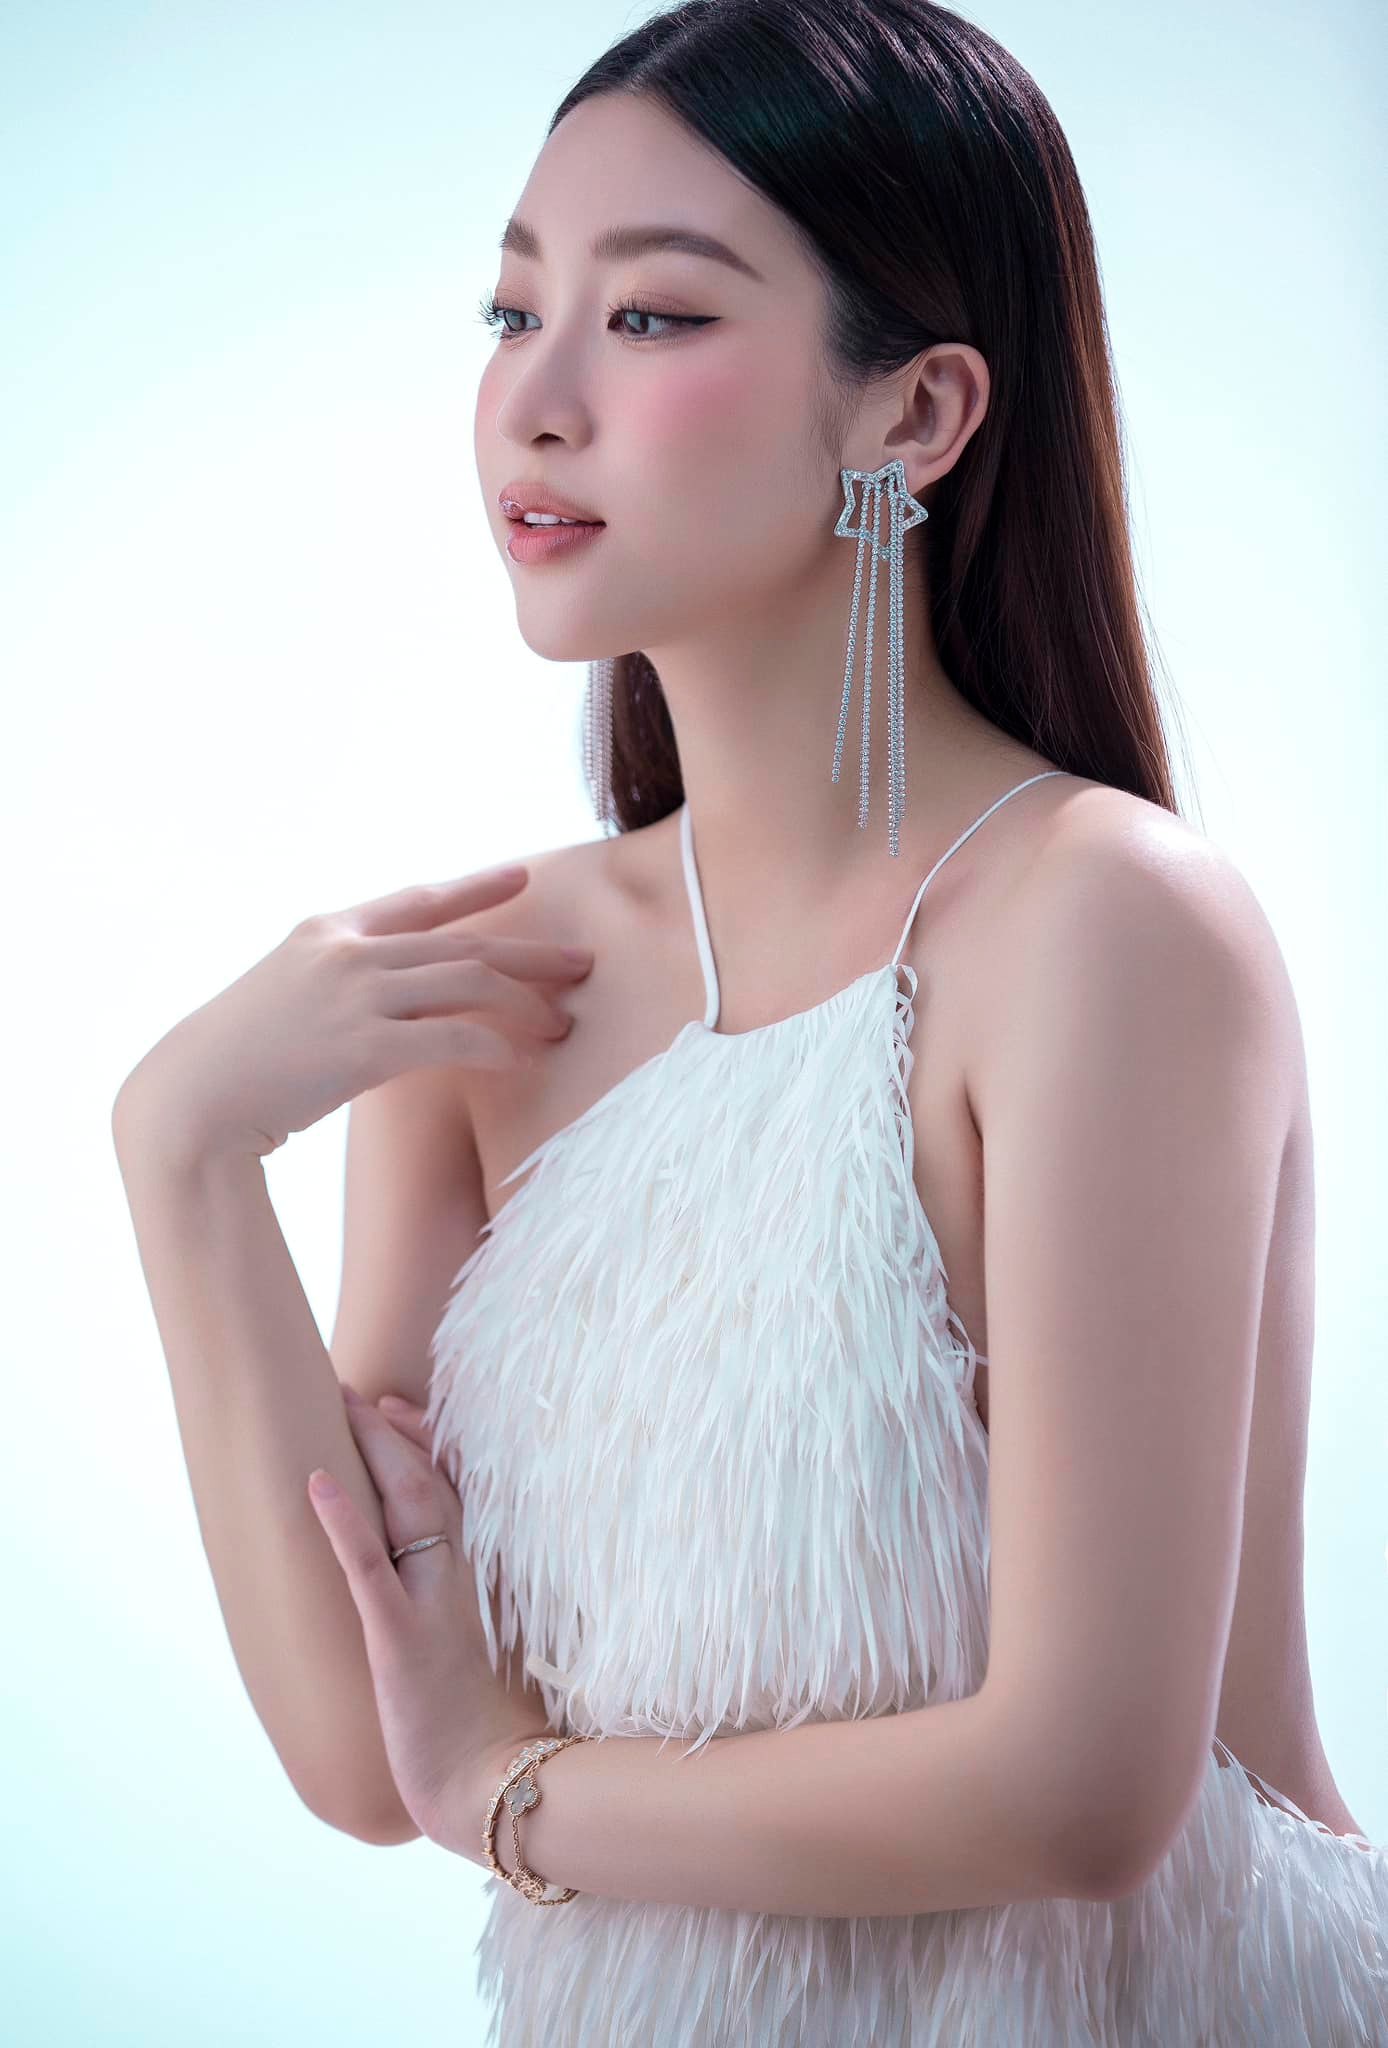 Hoa hậu Đỗ Mỹ Linh lần đầu đăng ảnh mang thai con đầu lòng nhân dịp 7 năm đăng quang - Ảnh 2.